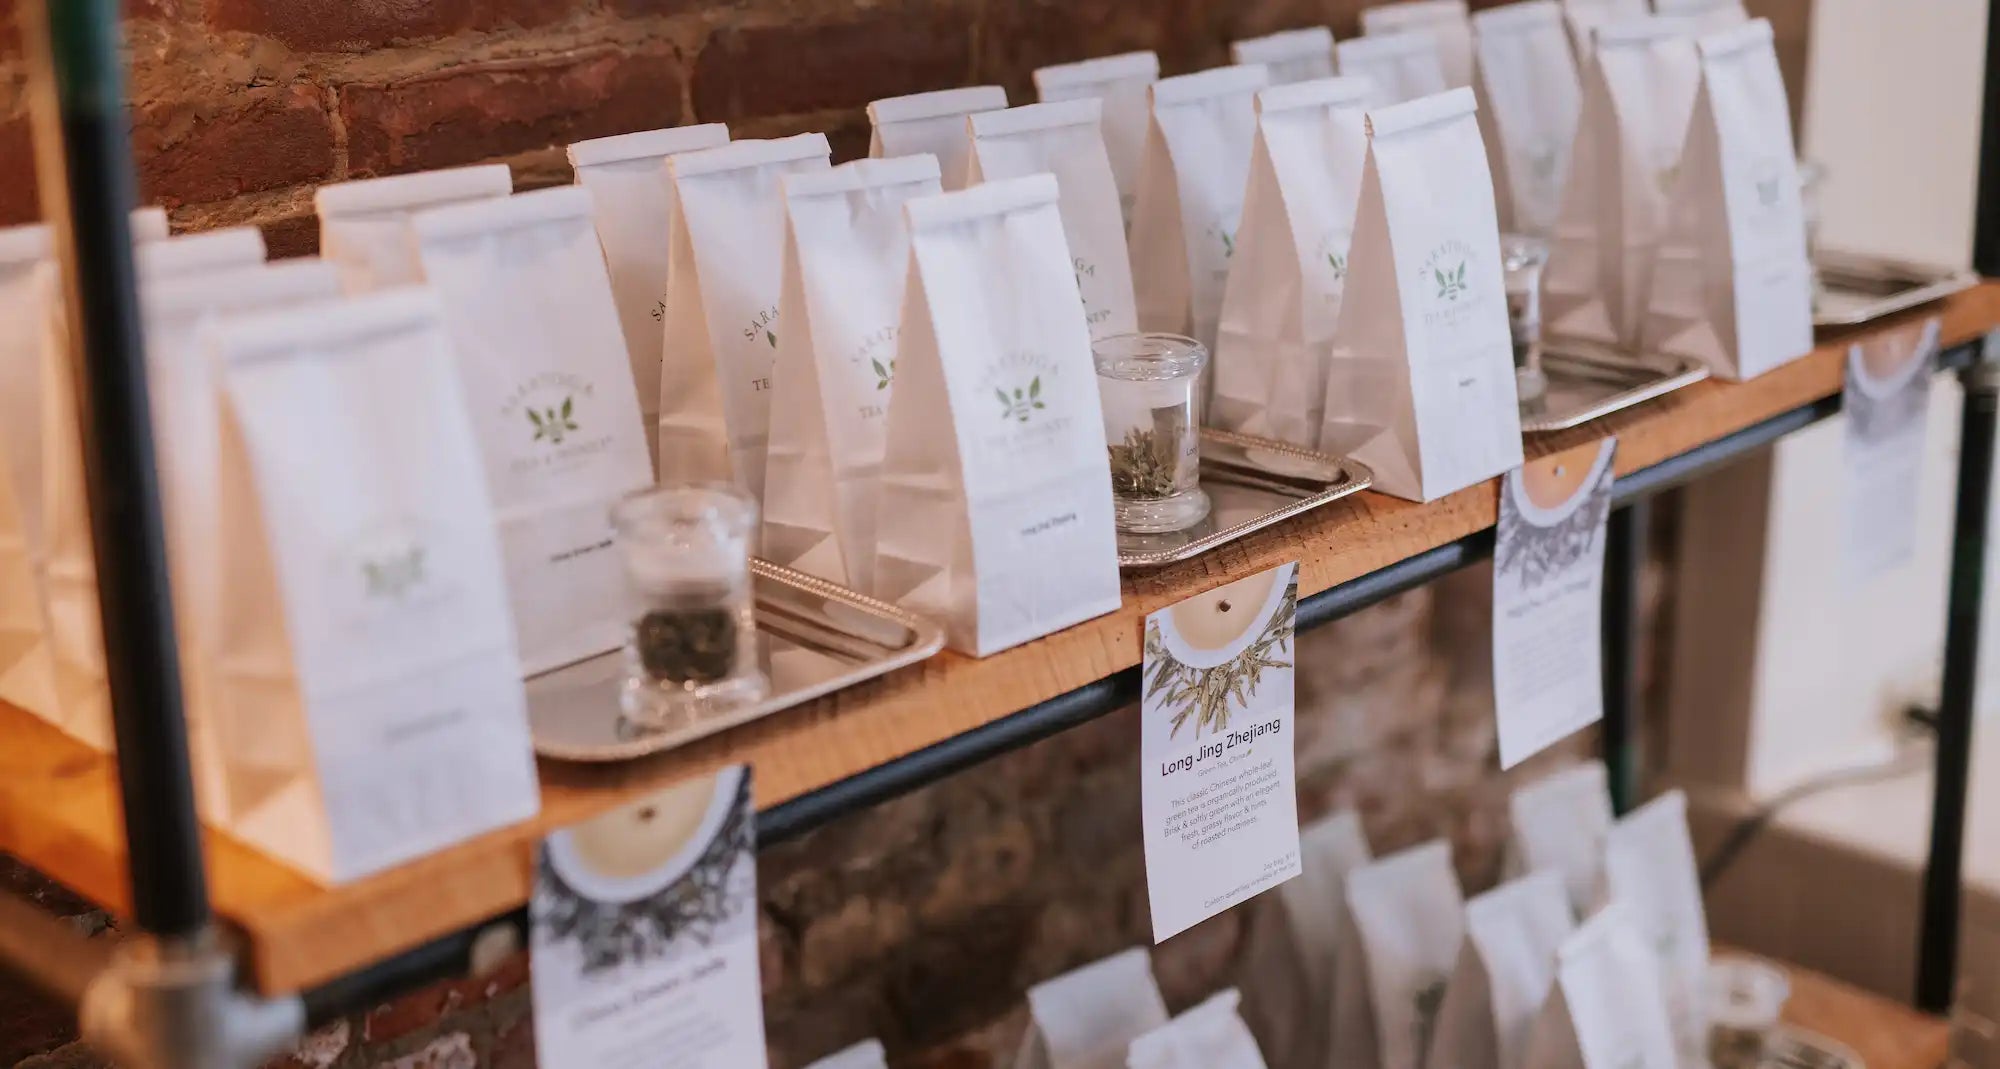 bags of loose leaf tea on the shelf at Saratoga Tea & Honey Co.